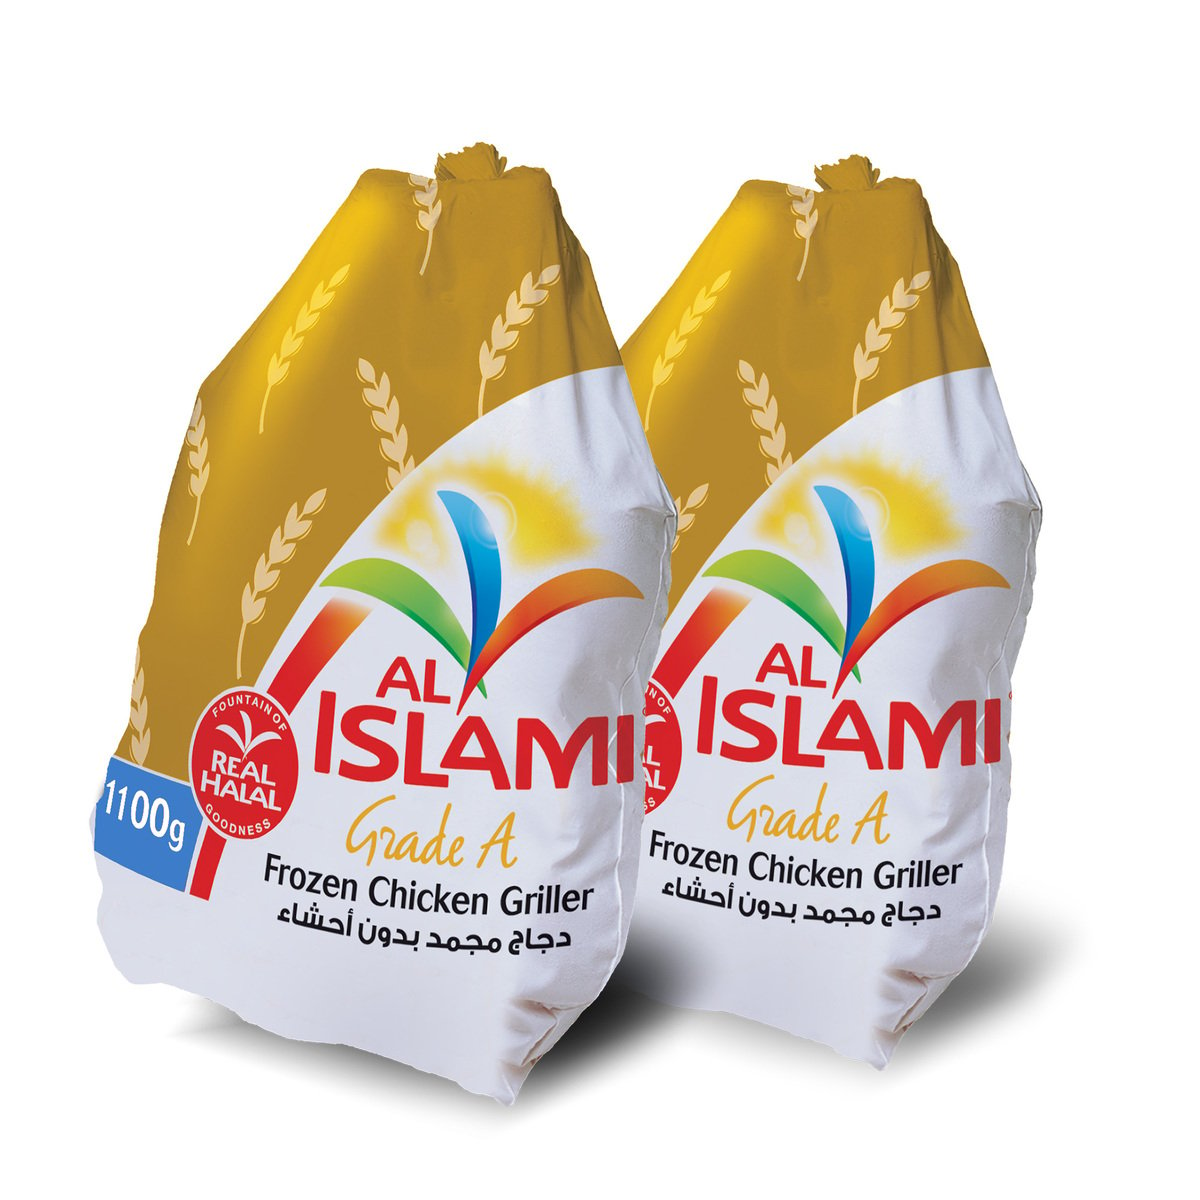 Al Islami Frozen Chicken Griller 2 x 1.1 kg